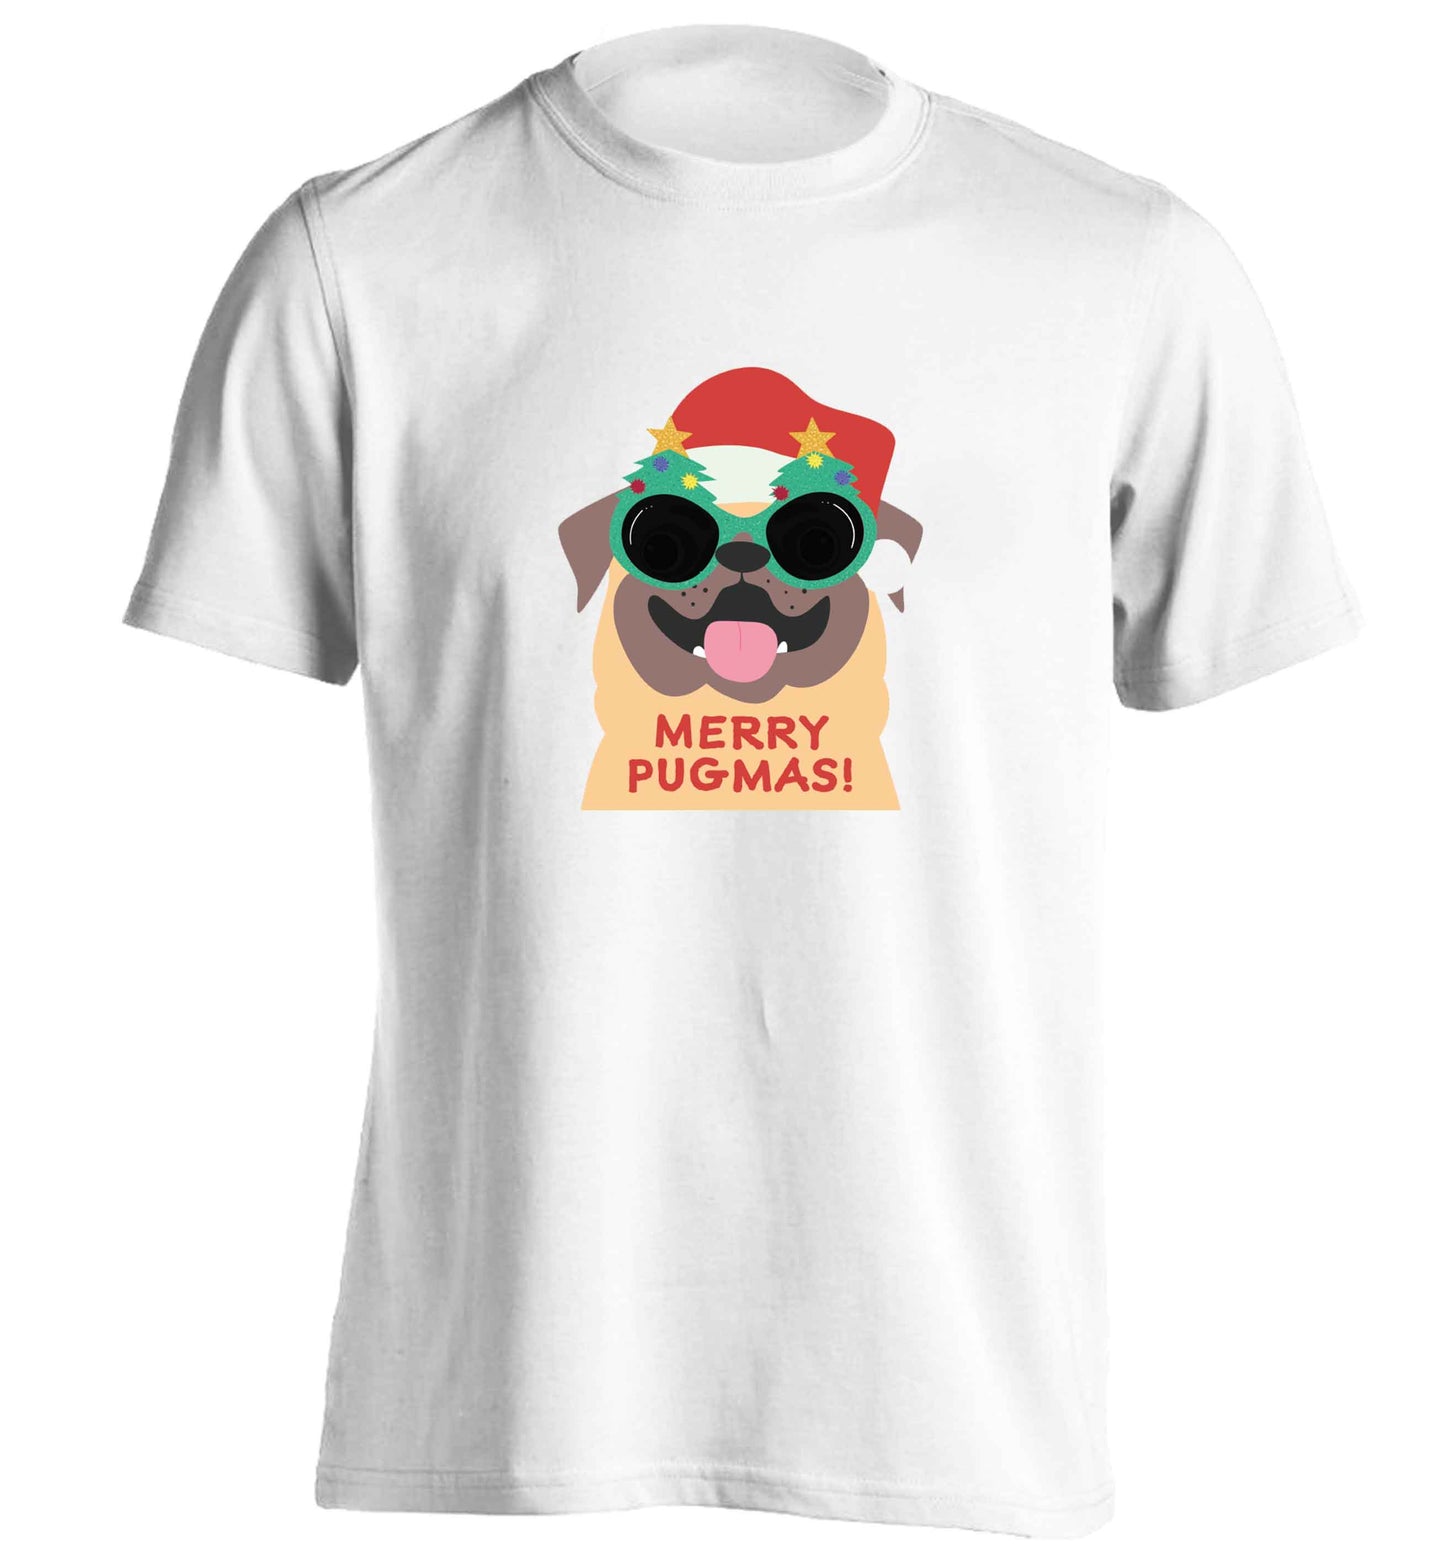 Merry Pugmas adults unisex white Tshirt 2XL